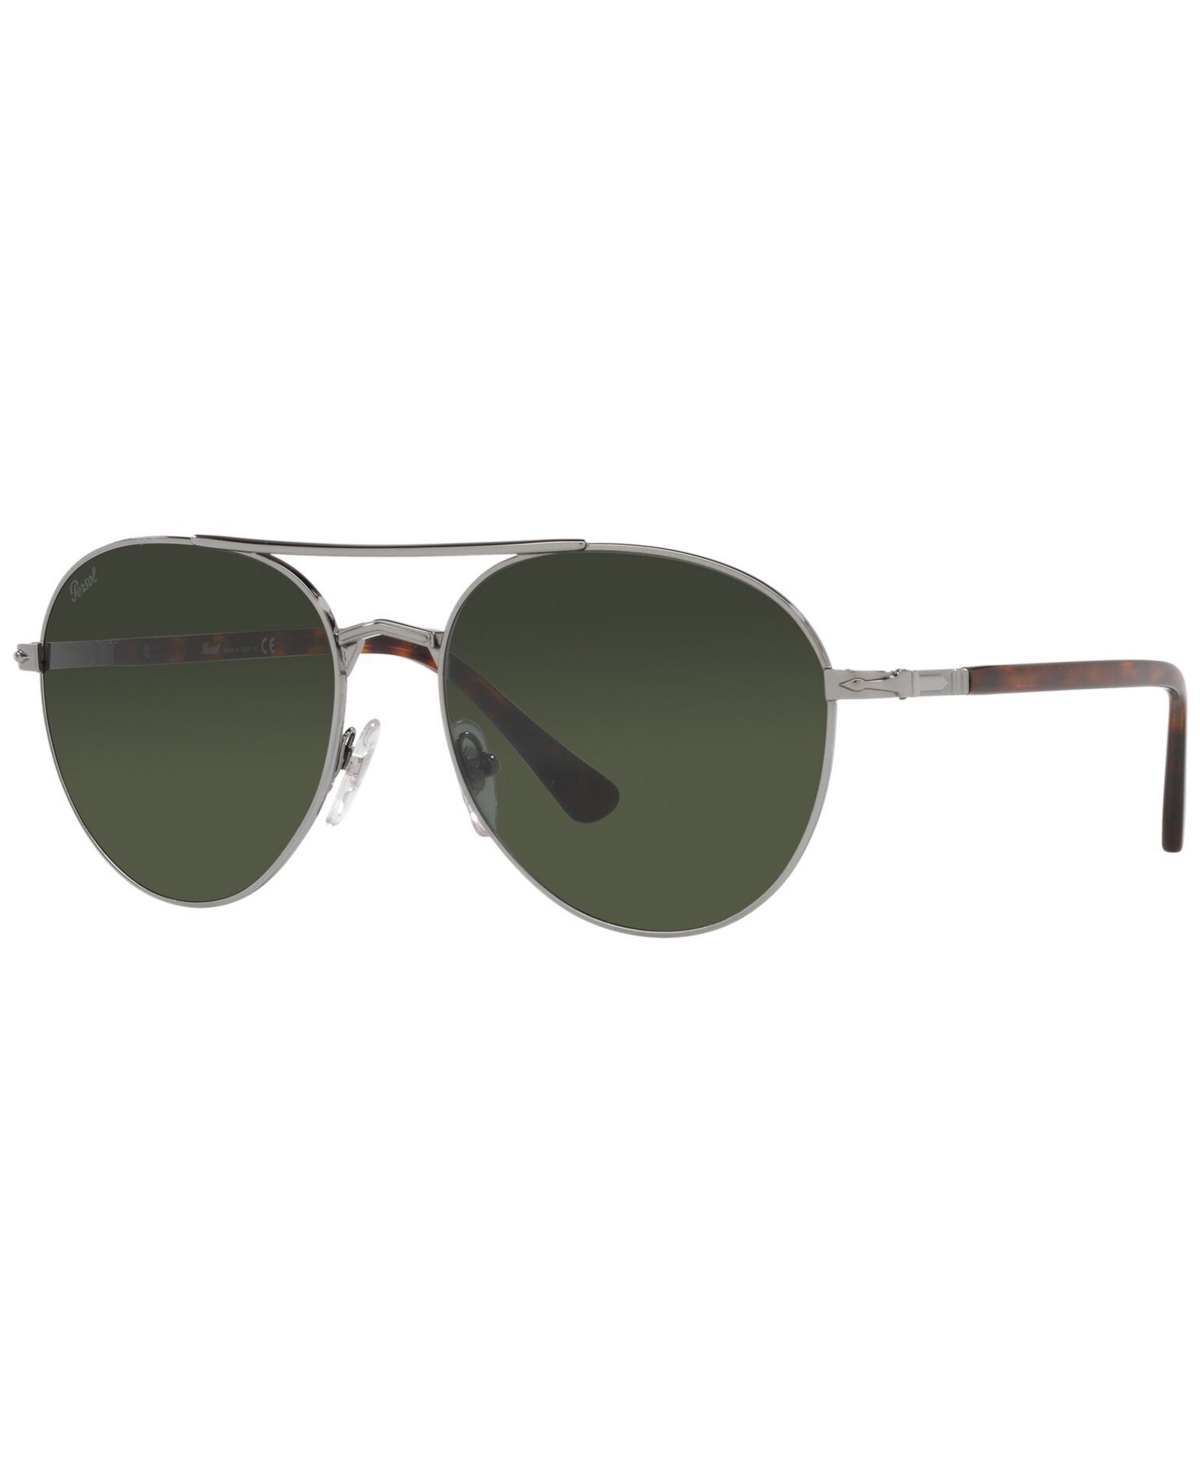 Persol Unisex Sunglasses Po2477s In Gunmetal,green